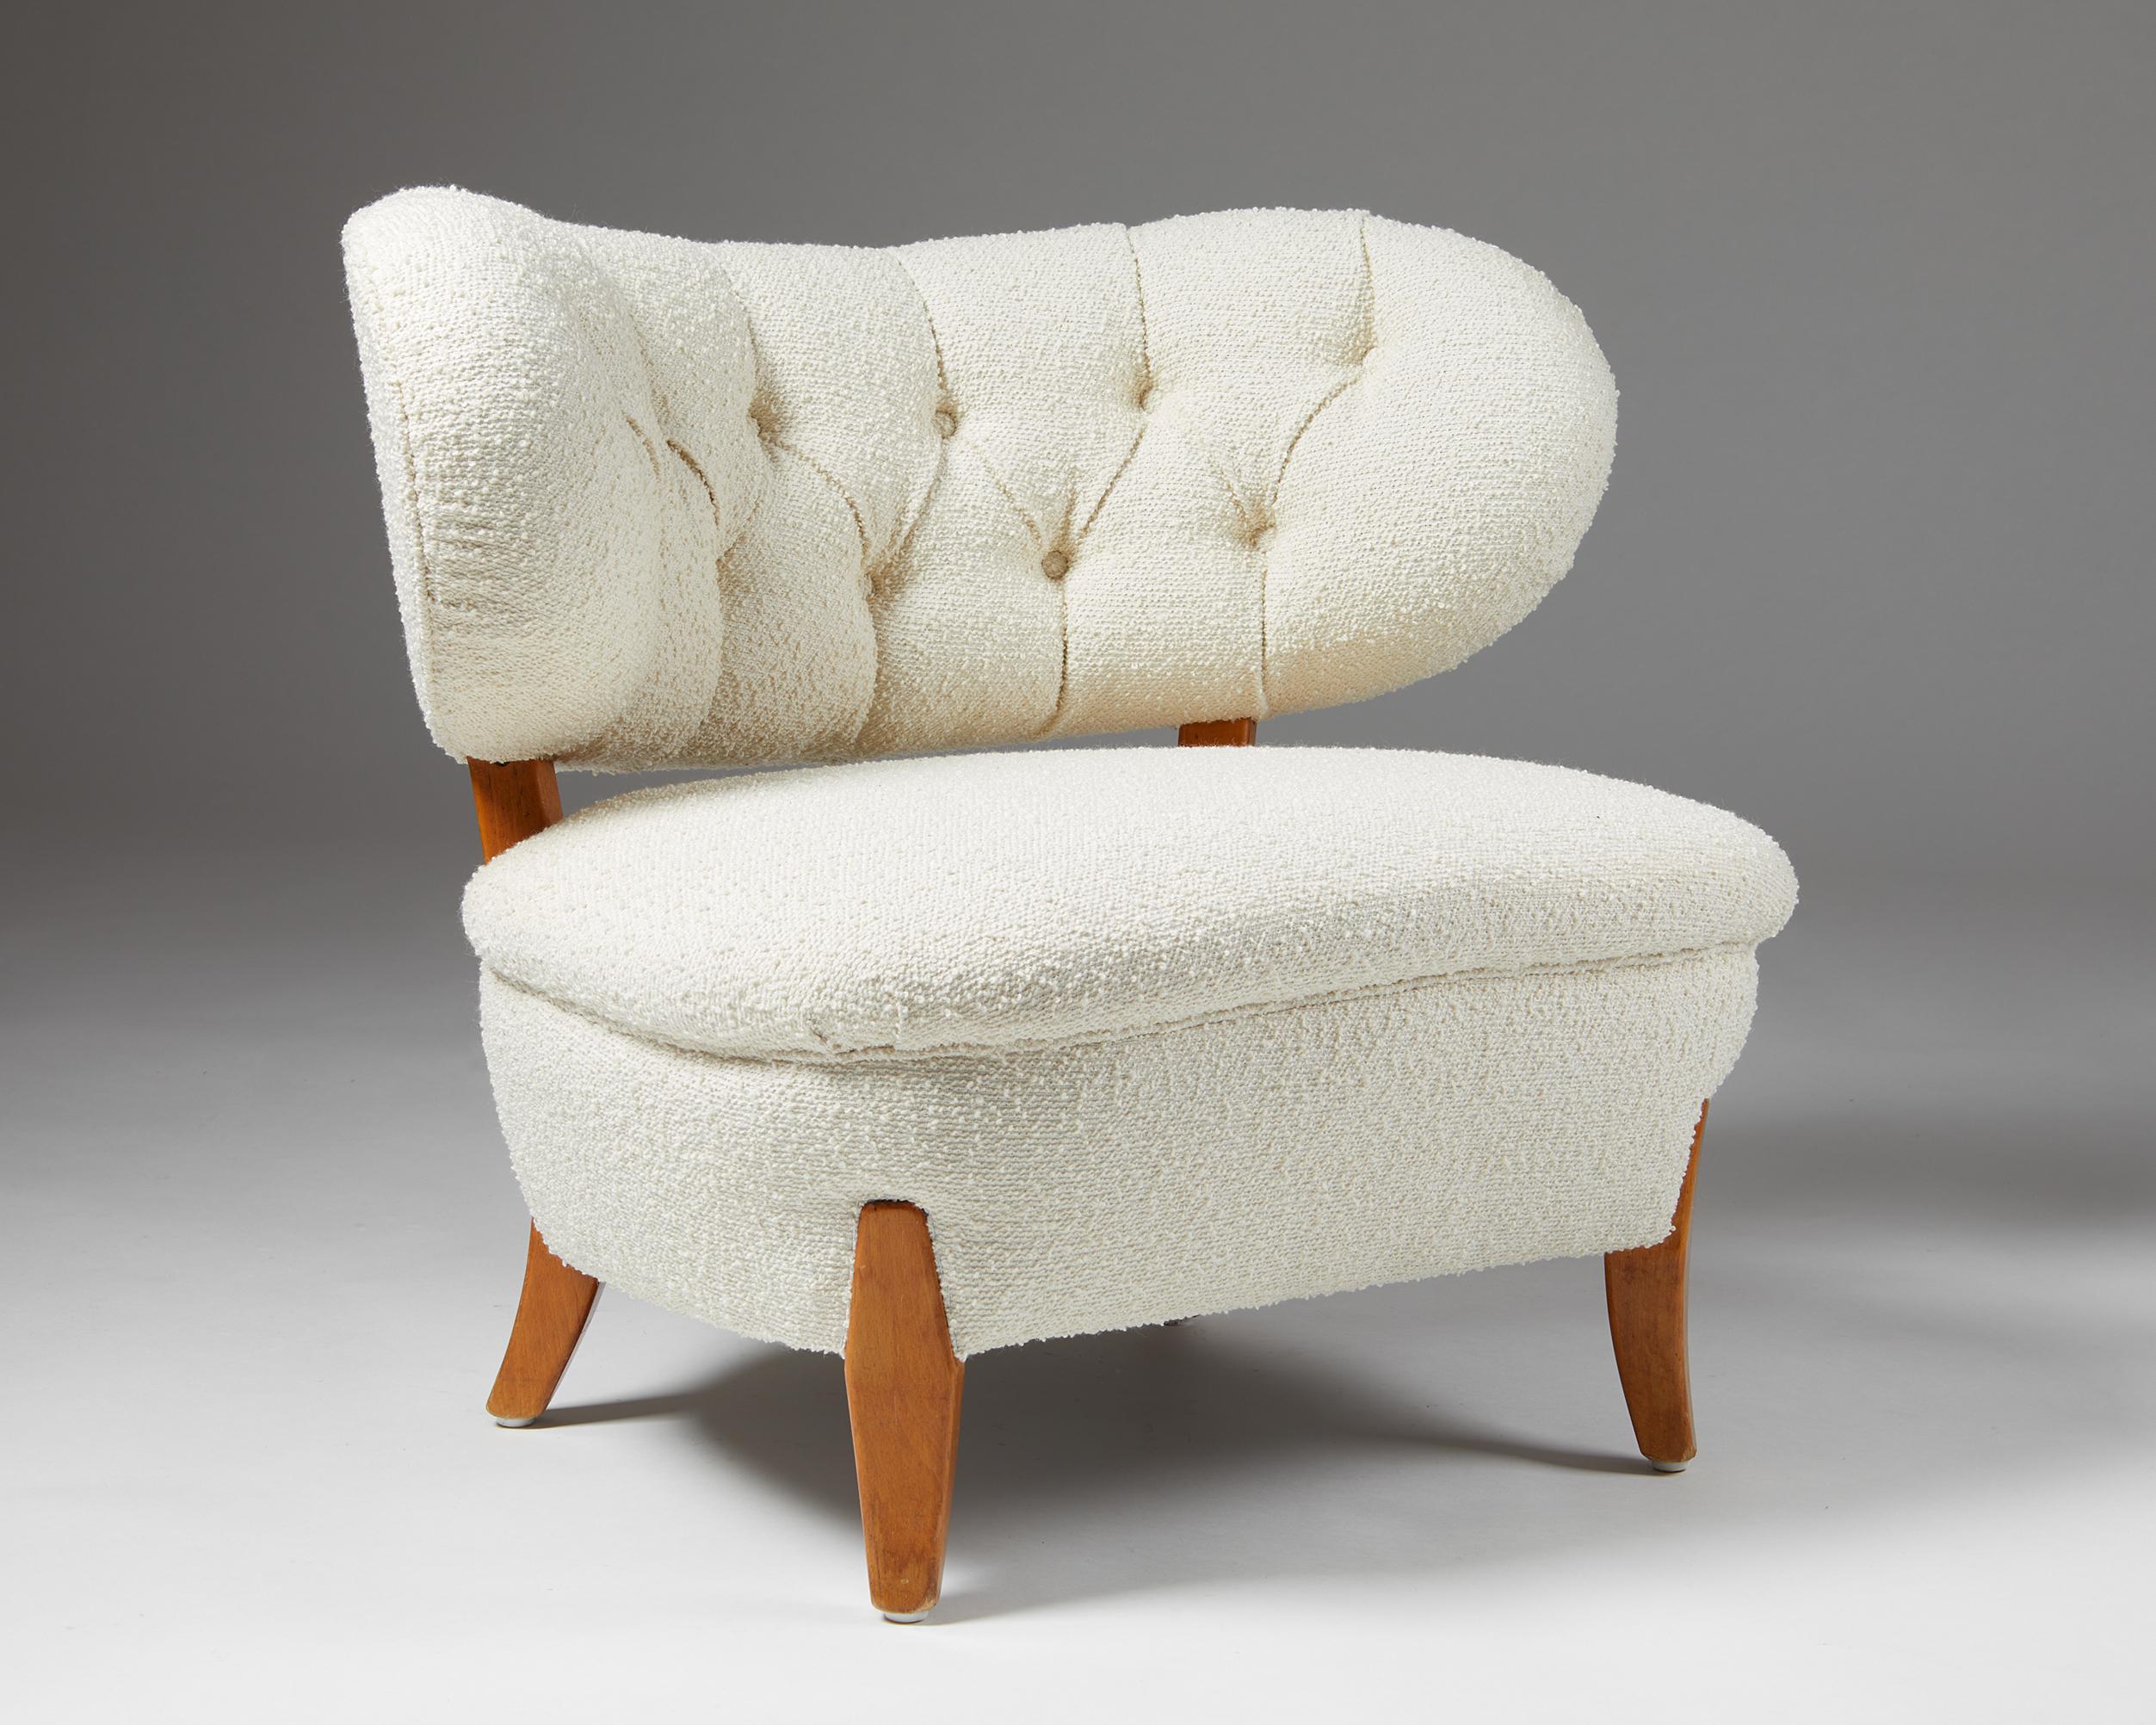 Sessel, entworfen von Otto Shulz für Boet,
Schweden. 1940s.
Polsterung aus Wolle und lackiertem Holz.

Dieses Stuhlmodell ist ein schönes Beispiel für das Design von Otto Schulz. Er wurde von einem der besten Polsterer Schwedens mit dem